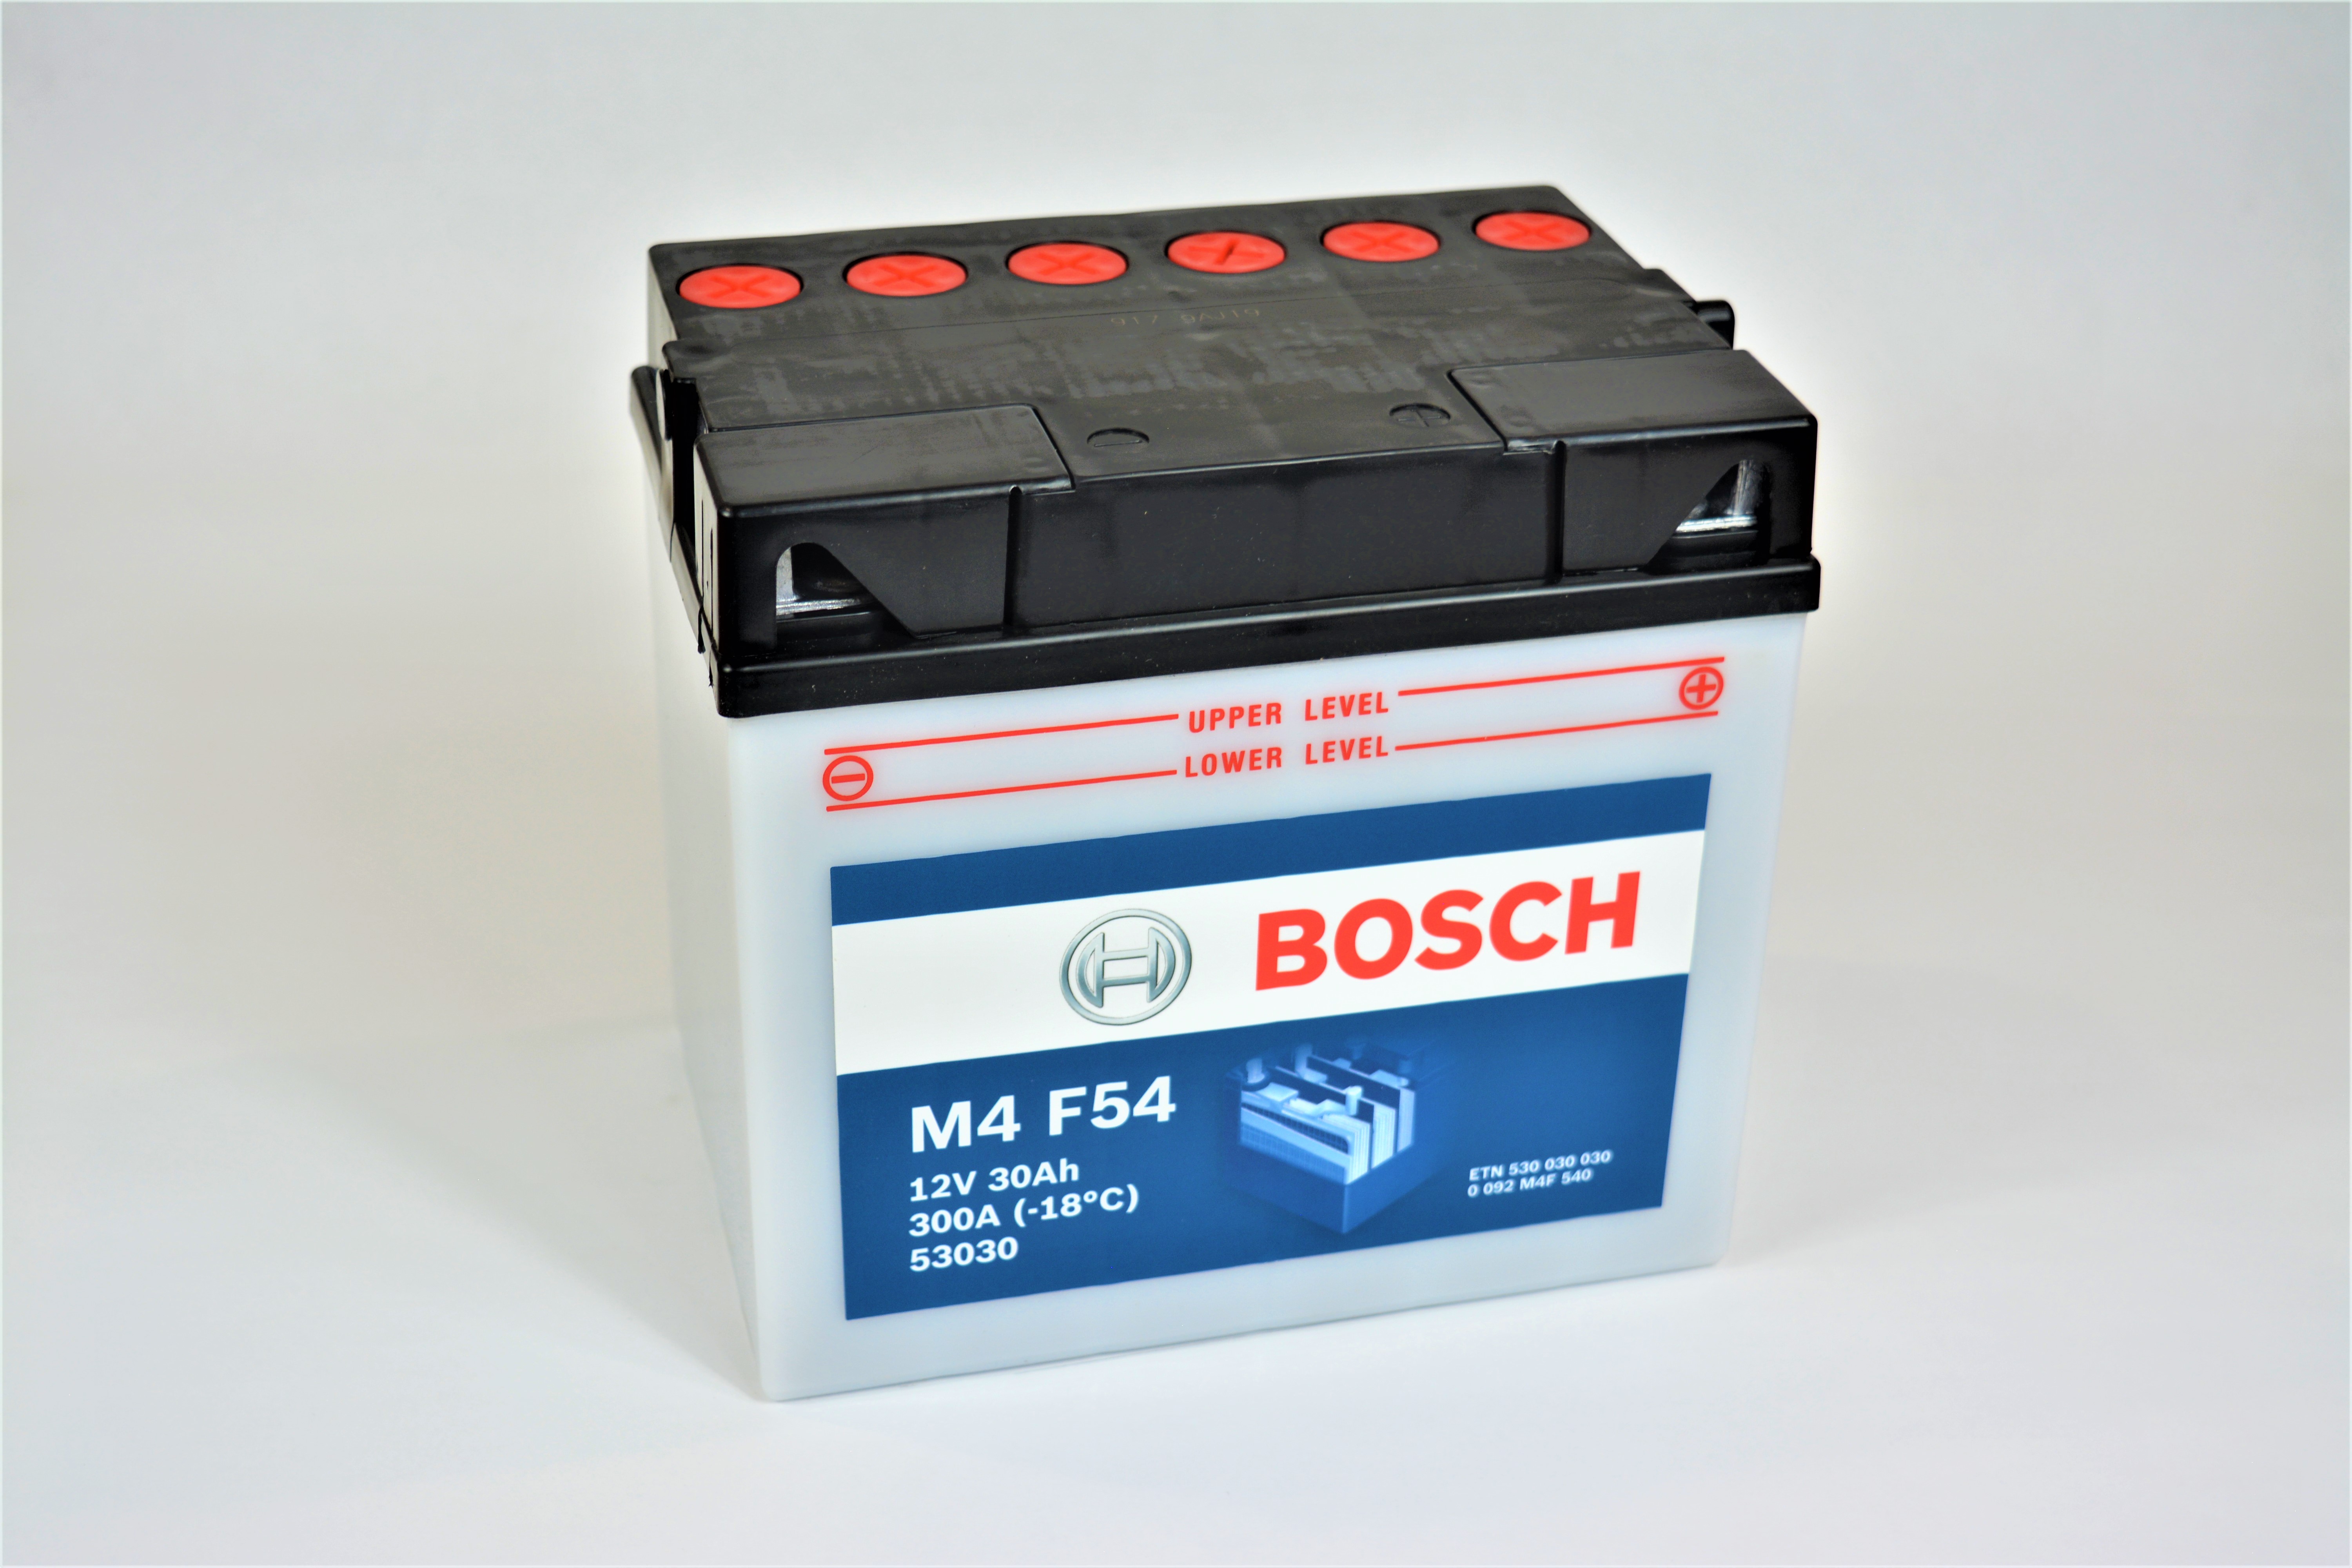 BOSCH Bosch - 12v 30ah - motor akkumulátor - jobb+ *53030